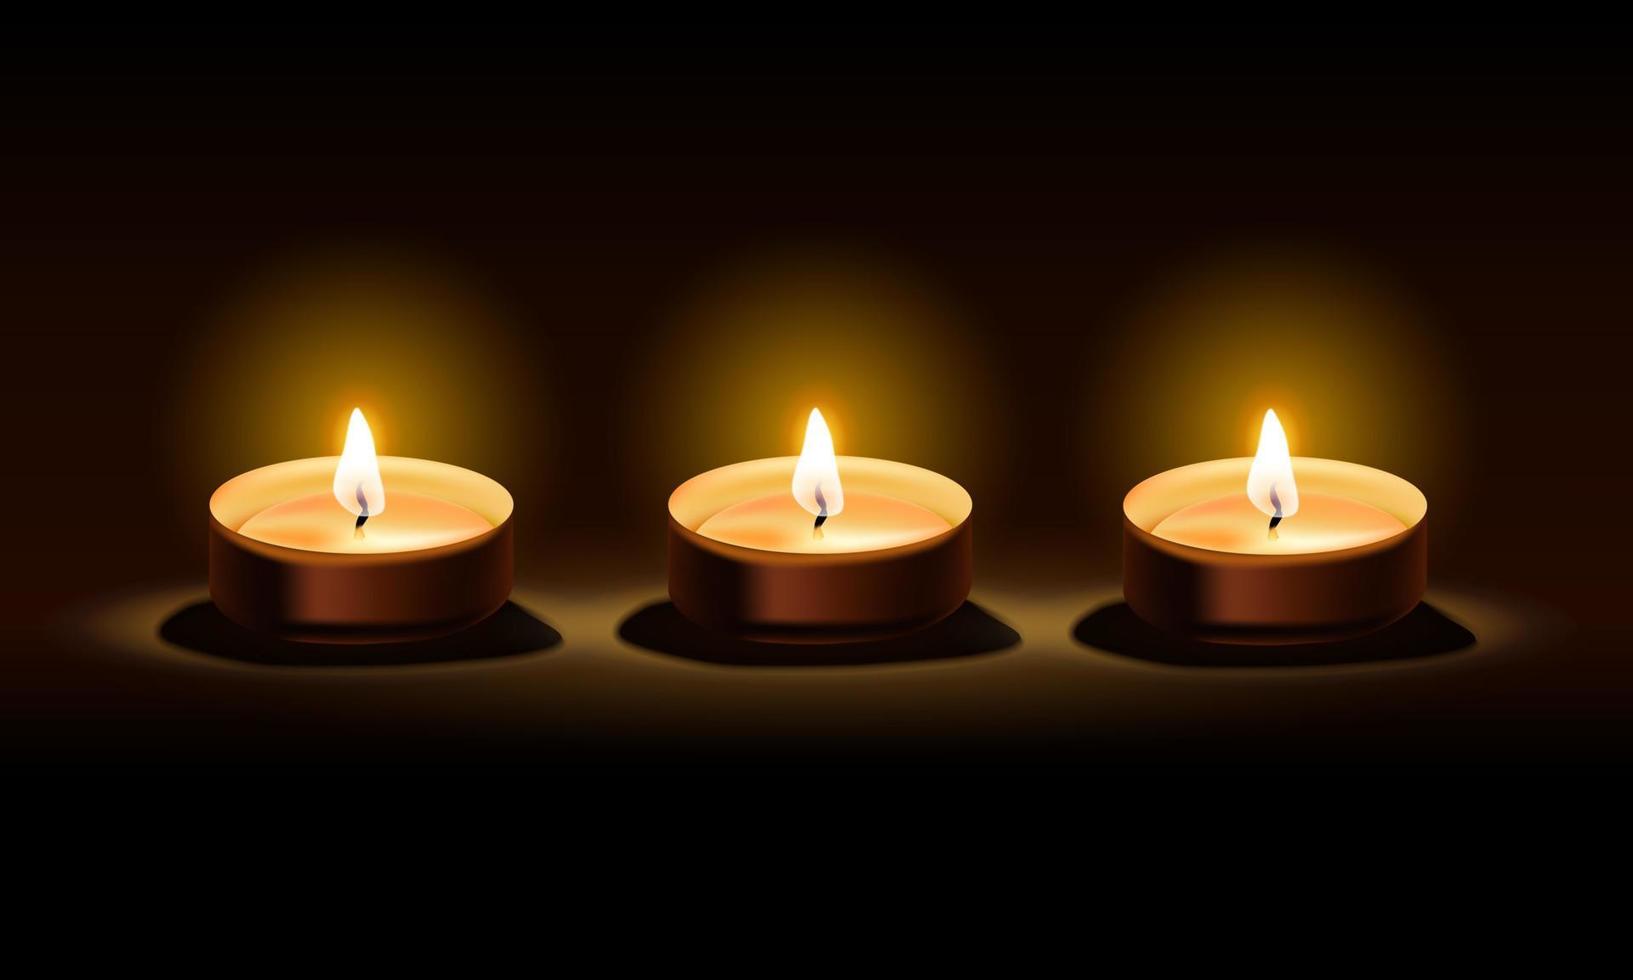 trois bougies sur fond noir foncé pour la sérénité, illustration vectorielle vecteur